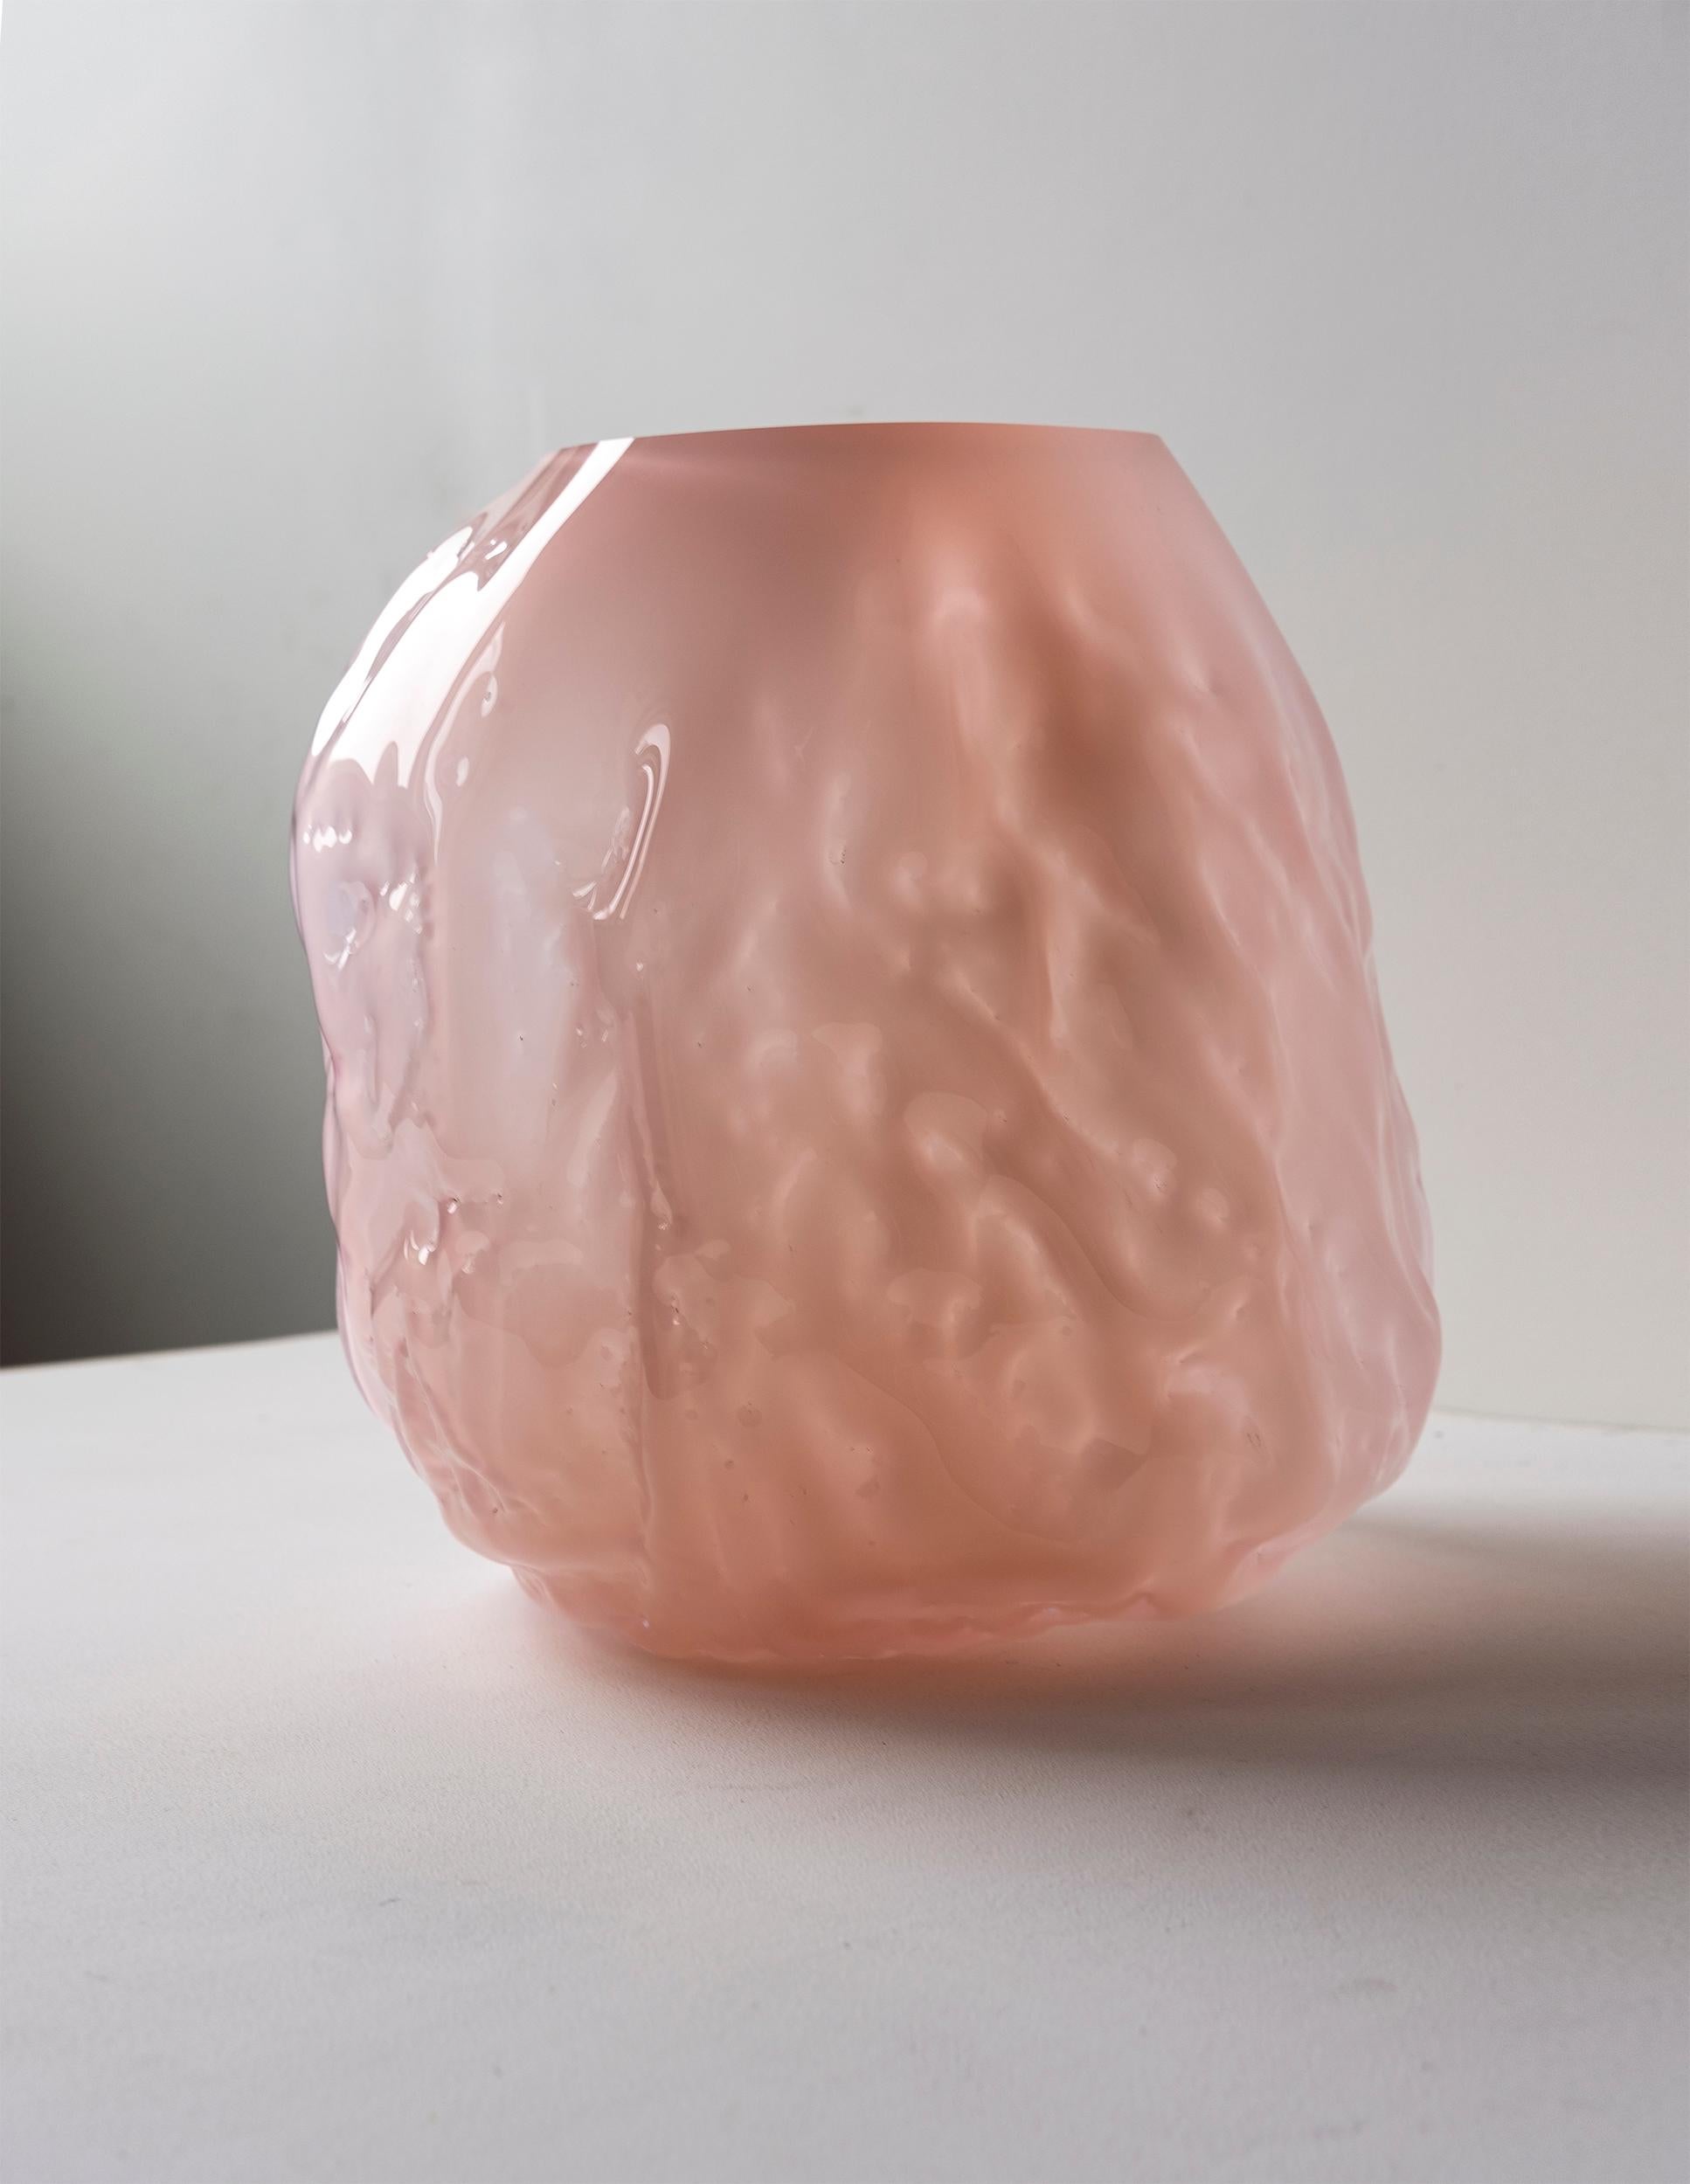 Vase aus mundgeblasenem Glas, hergestellt in Formen aus weichem Ton, die von Hand geformt werden, bevor das Glas in die Form geblasen wird. Dieses Verfahren macht jedes Stück einzigartig und verleiht ihm eine faltige Oberfläche. HINWEIS: Auf der